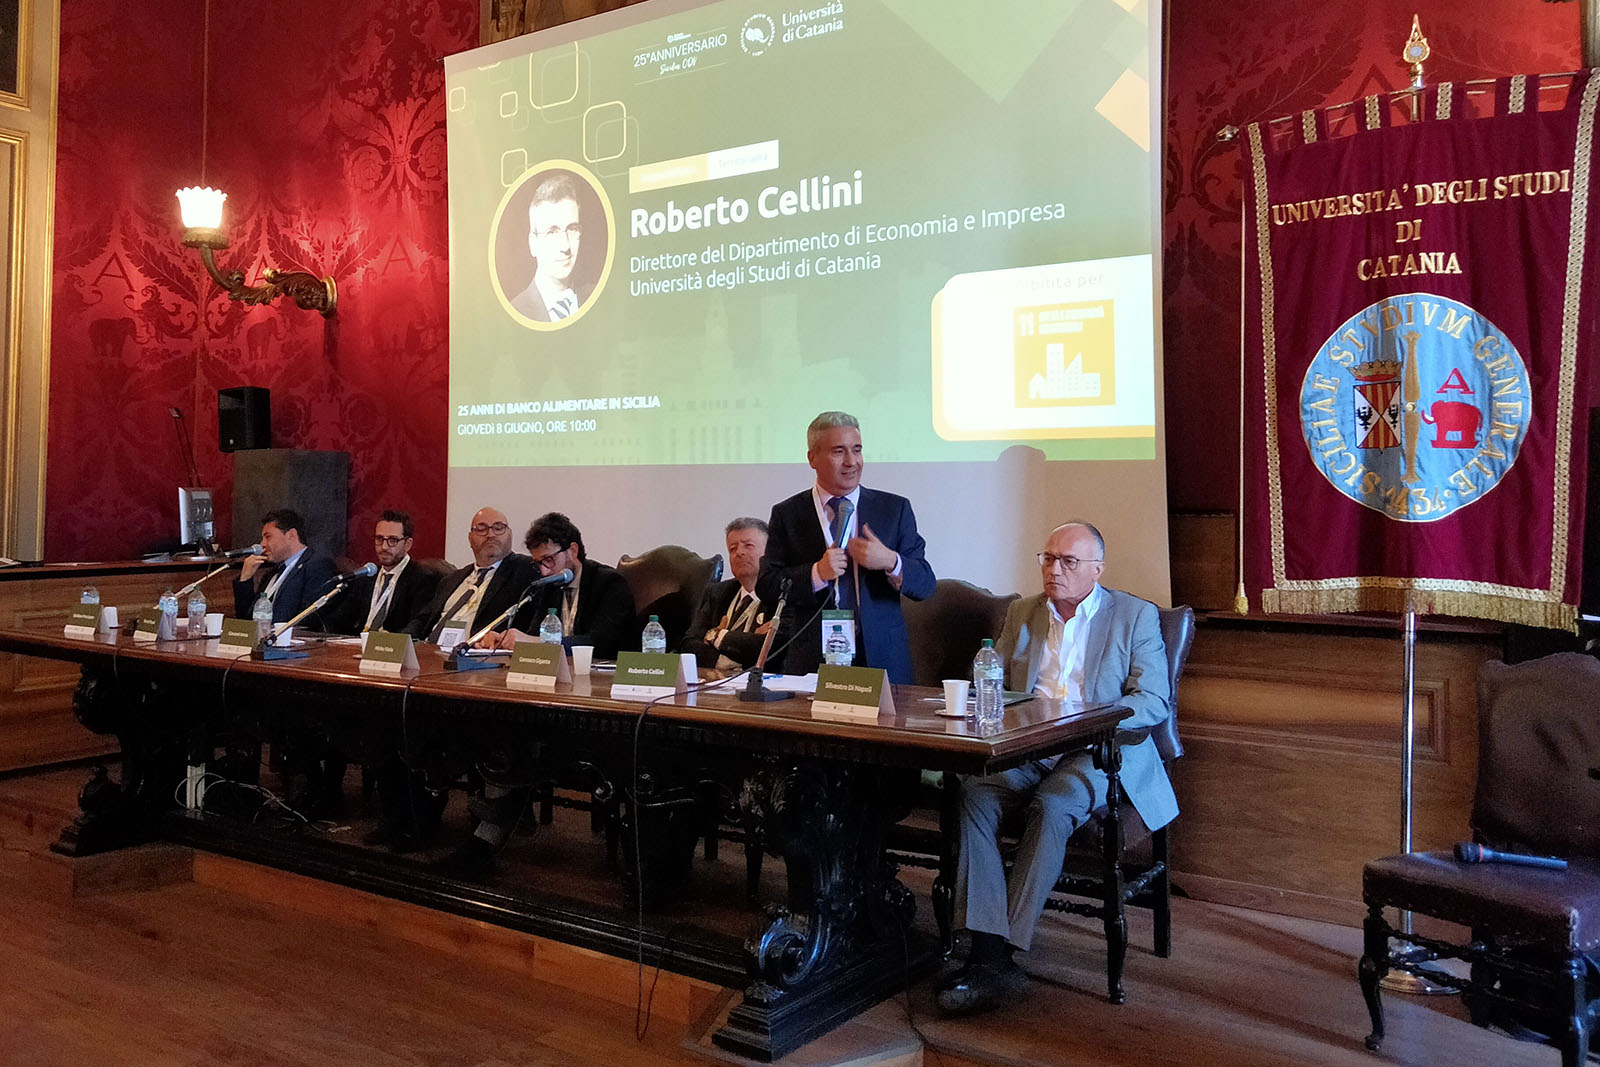 Un momento dell'intervento del prof. Roberto Cellini